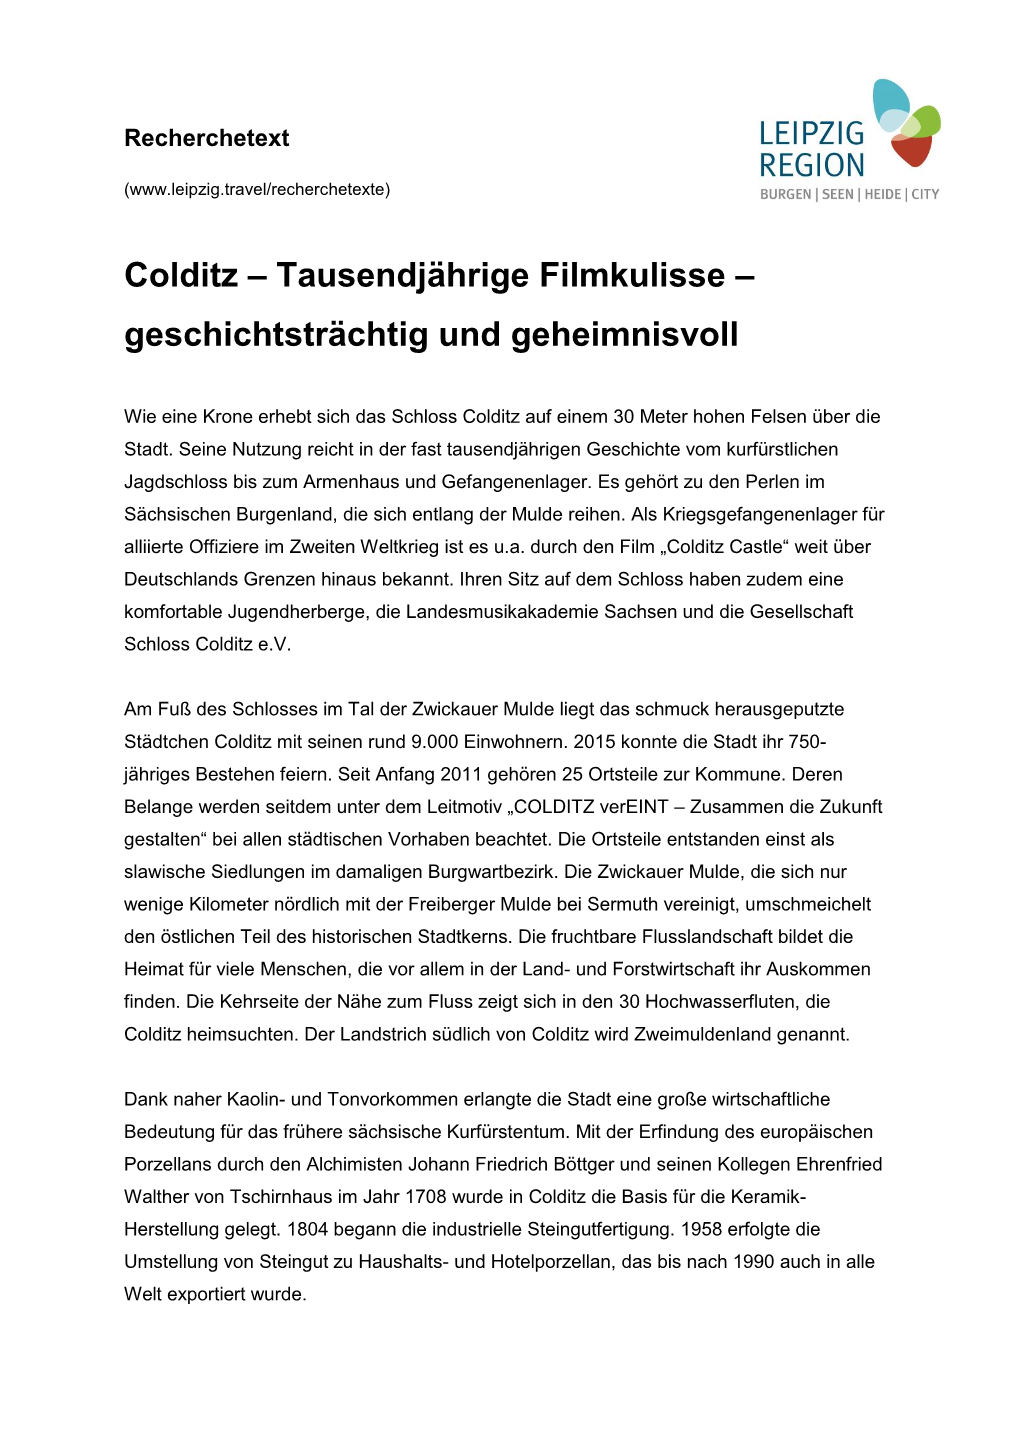 Colditz – Tausendjährige Filmkulisse – Geschichtsträchtig Und Geheimnisvoll